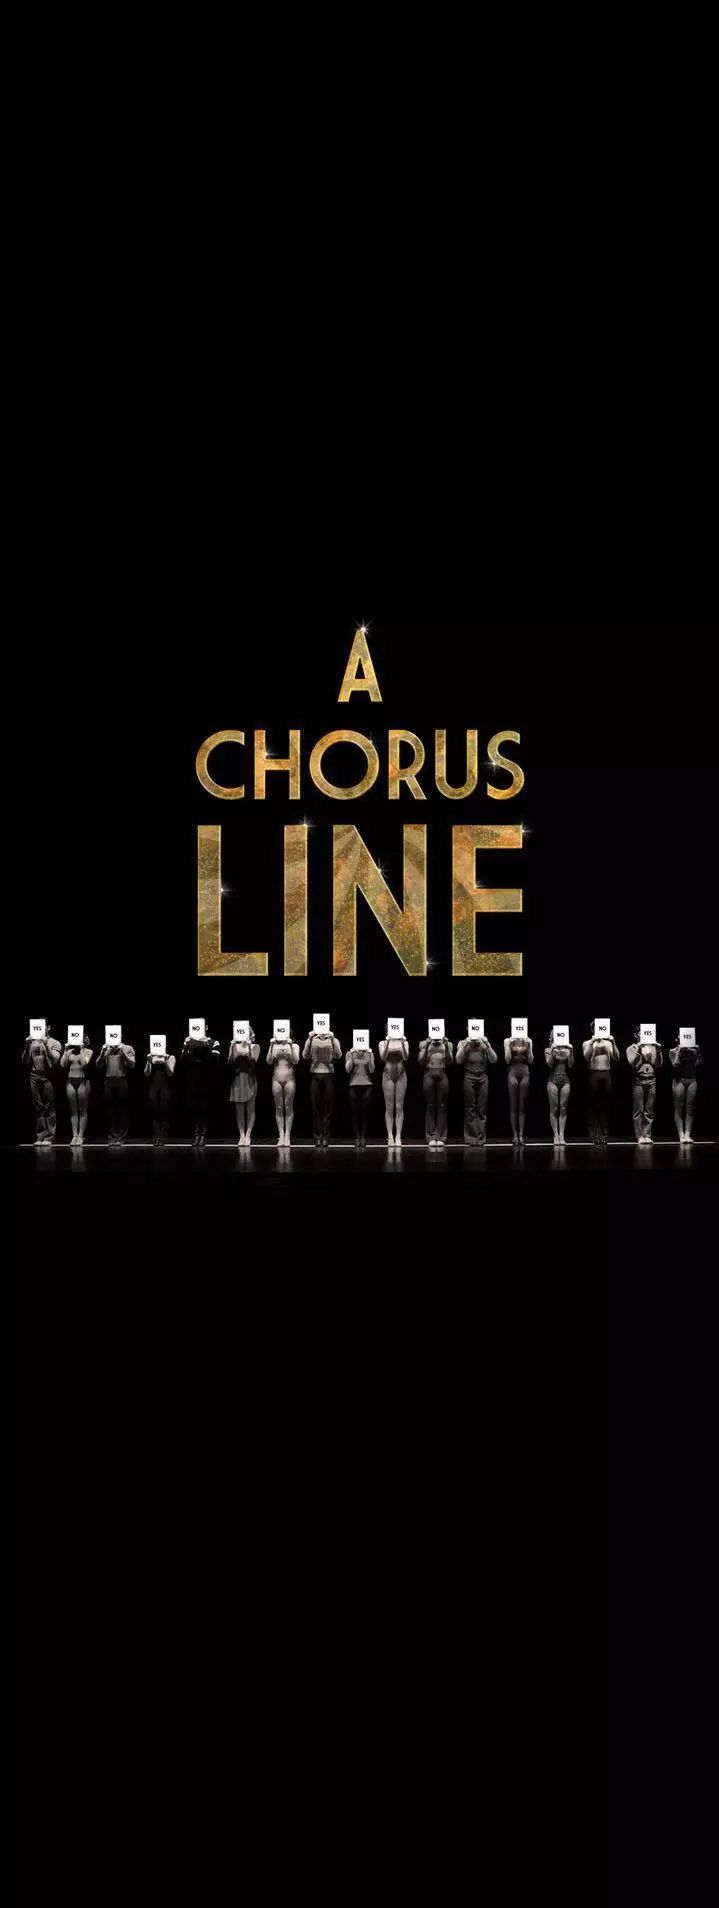 a chorus line | 历经40余年的盛演不衰,全都为了梦想